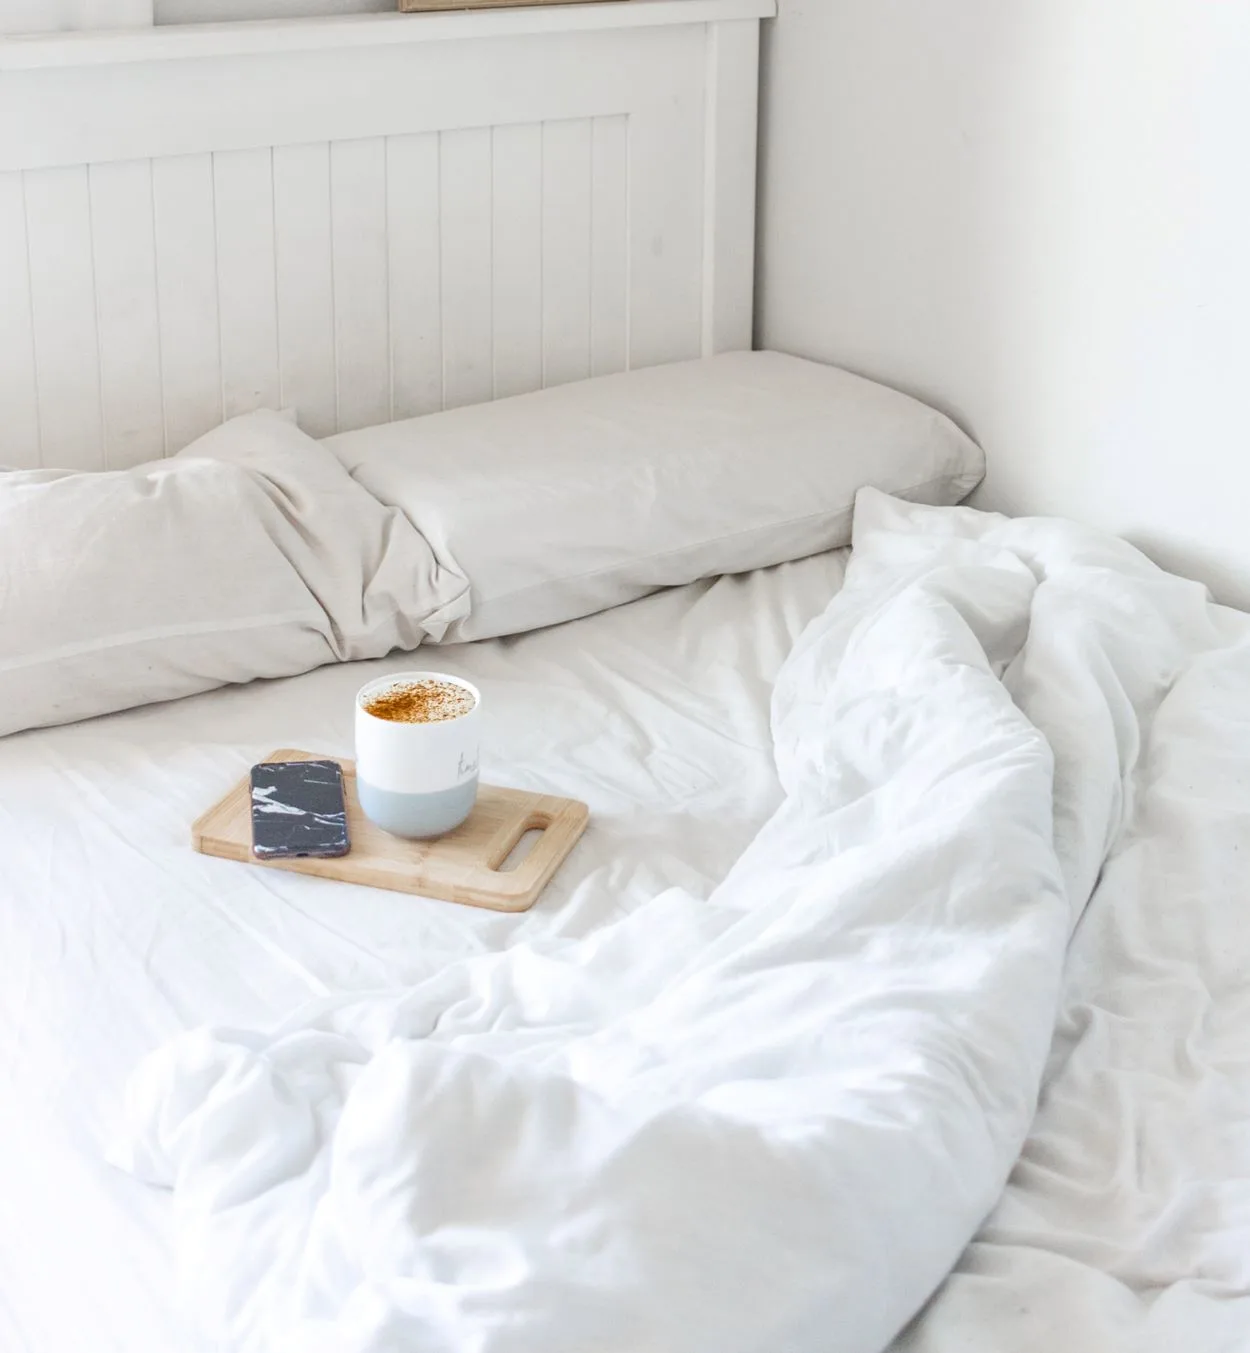  Koja je razlika između pospremiti i spremiti krevet? (Odgovoreno) – Sve razlike